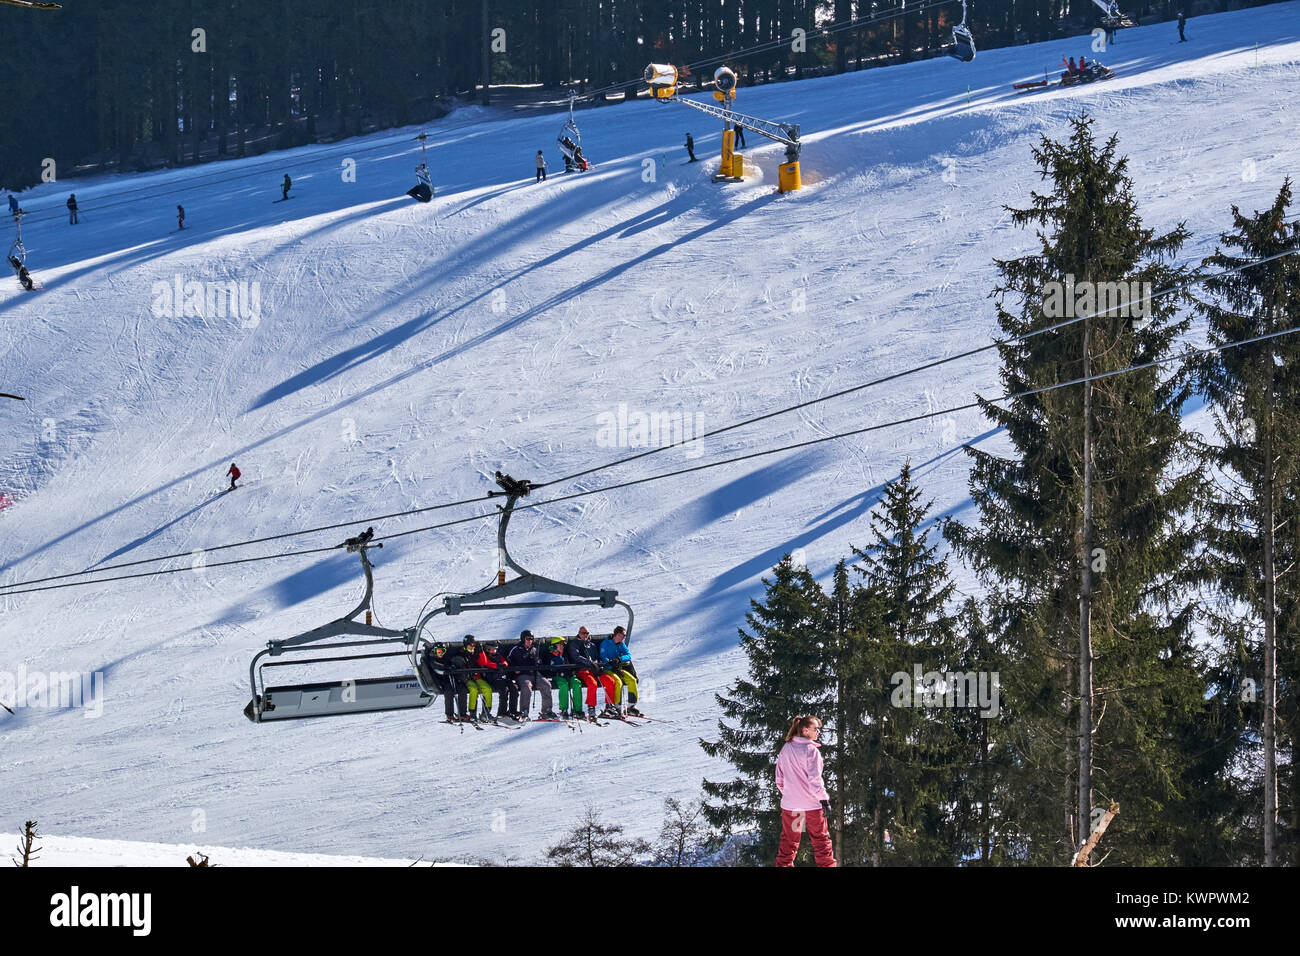 WINTERBERG, Deutschland - 15. FEBRUAR 2017: Sessellift hängt über eine Skipiste im Skikarussell Winterberg Stockfoto